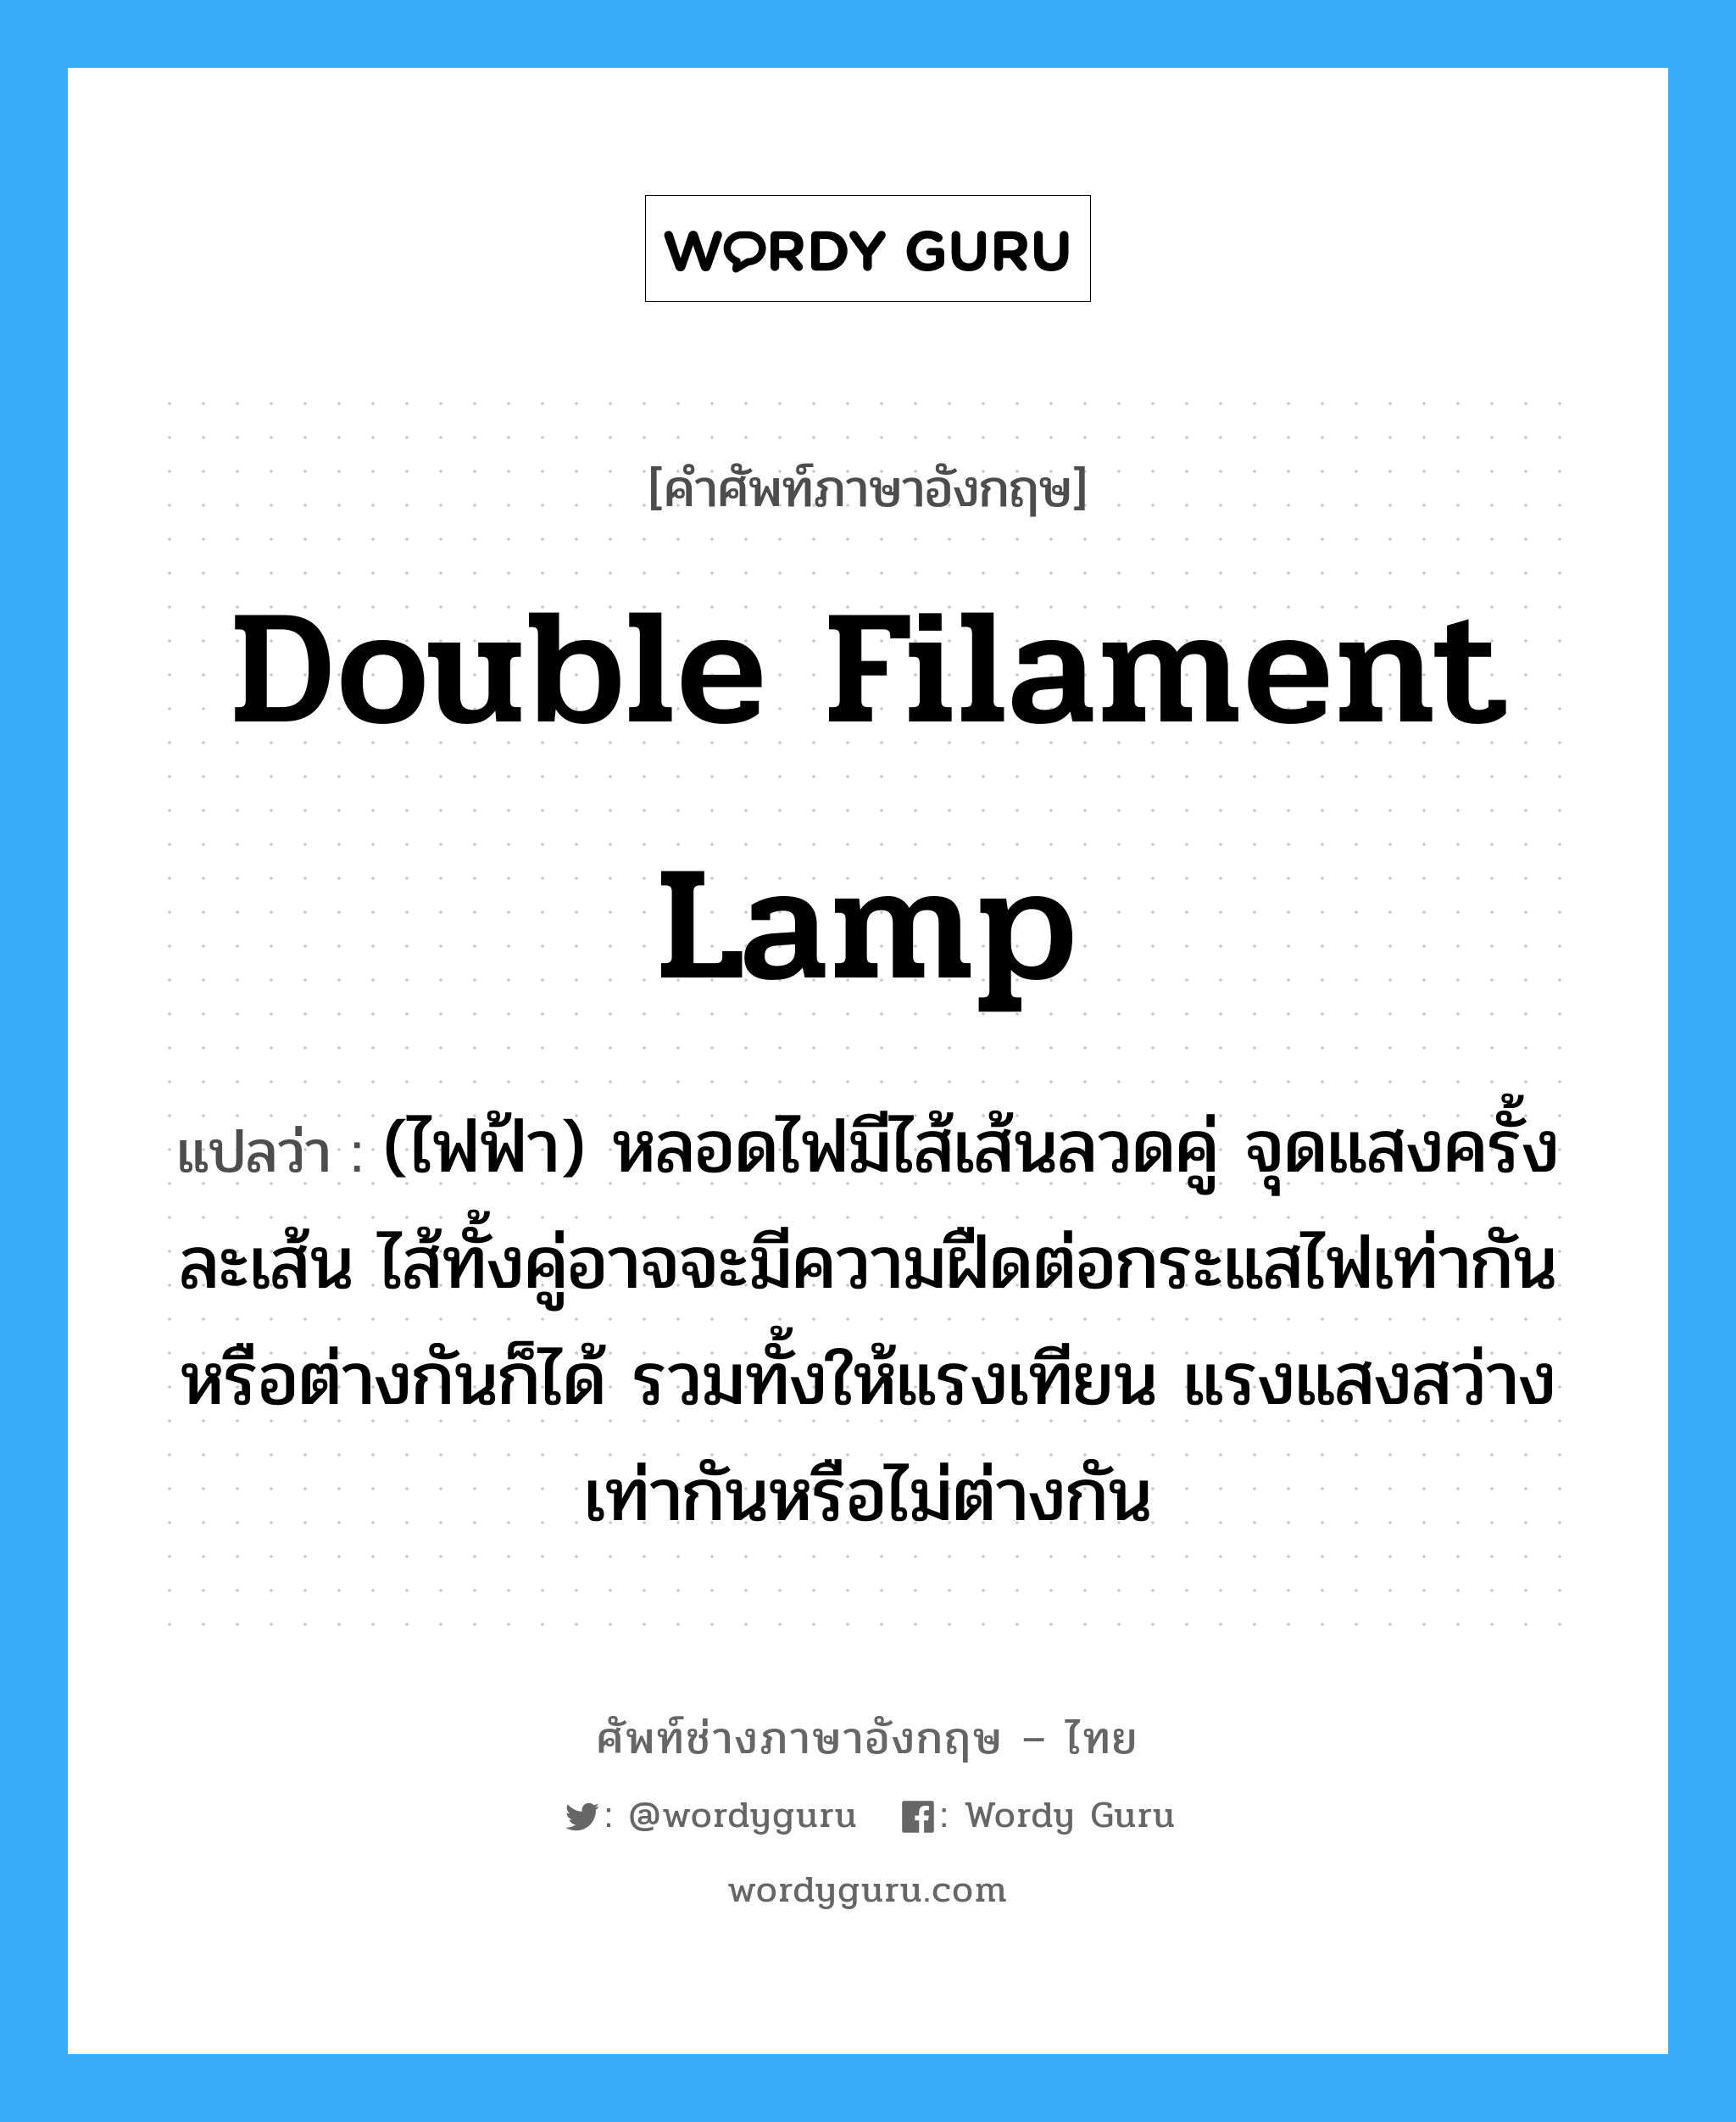 double filament lamp แปลว่า?, คำศัพท์ช่างภาษาอังกฤษ - ไทย double filament lamp คำศัพท์ภาษาอังกฤษ double filament lamp แปลว่า (ไฟฟ้า) หลอดไฟมีไส้เส้นลวดคู่ จุดแสงครั้งละเส้น ไส้ทั้งคู่อาจจะมีความฝืดต่อกระแสไฟเท่ากันหรือต่างกันก็ได้ รวมทั้งให้แรงเทียน แรงแสงสว่างเท่ากันหรือไม่ต่างกัน